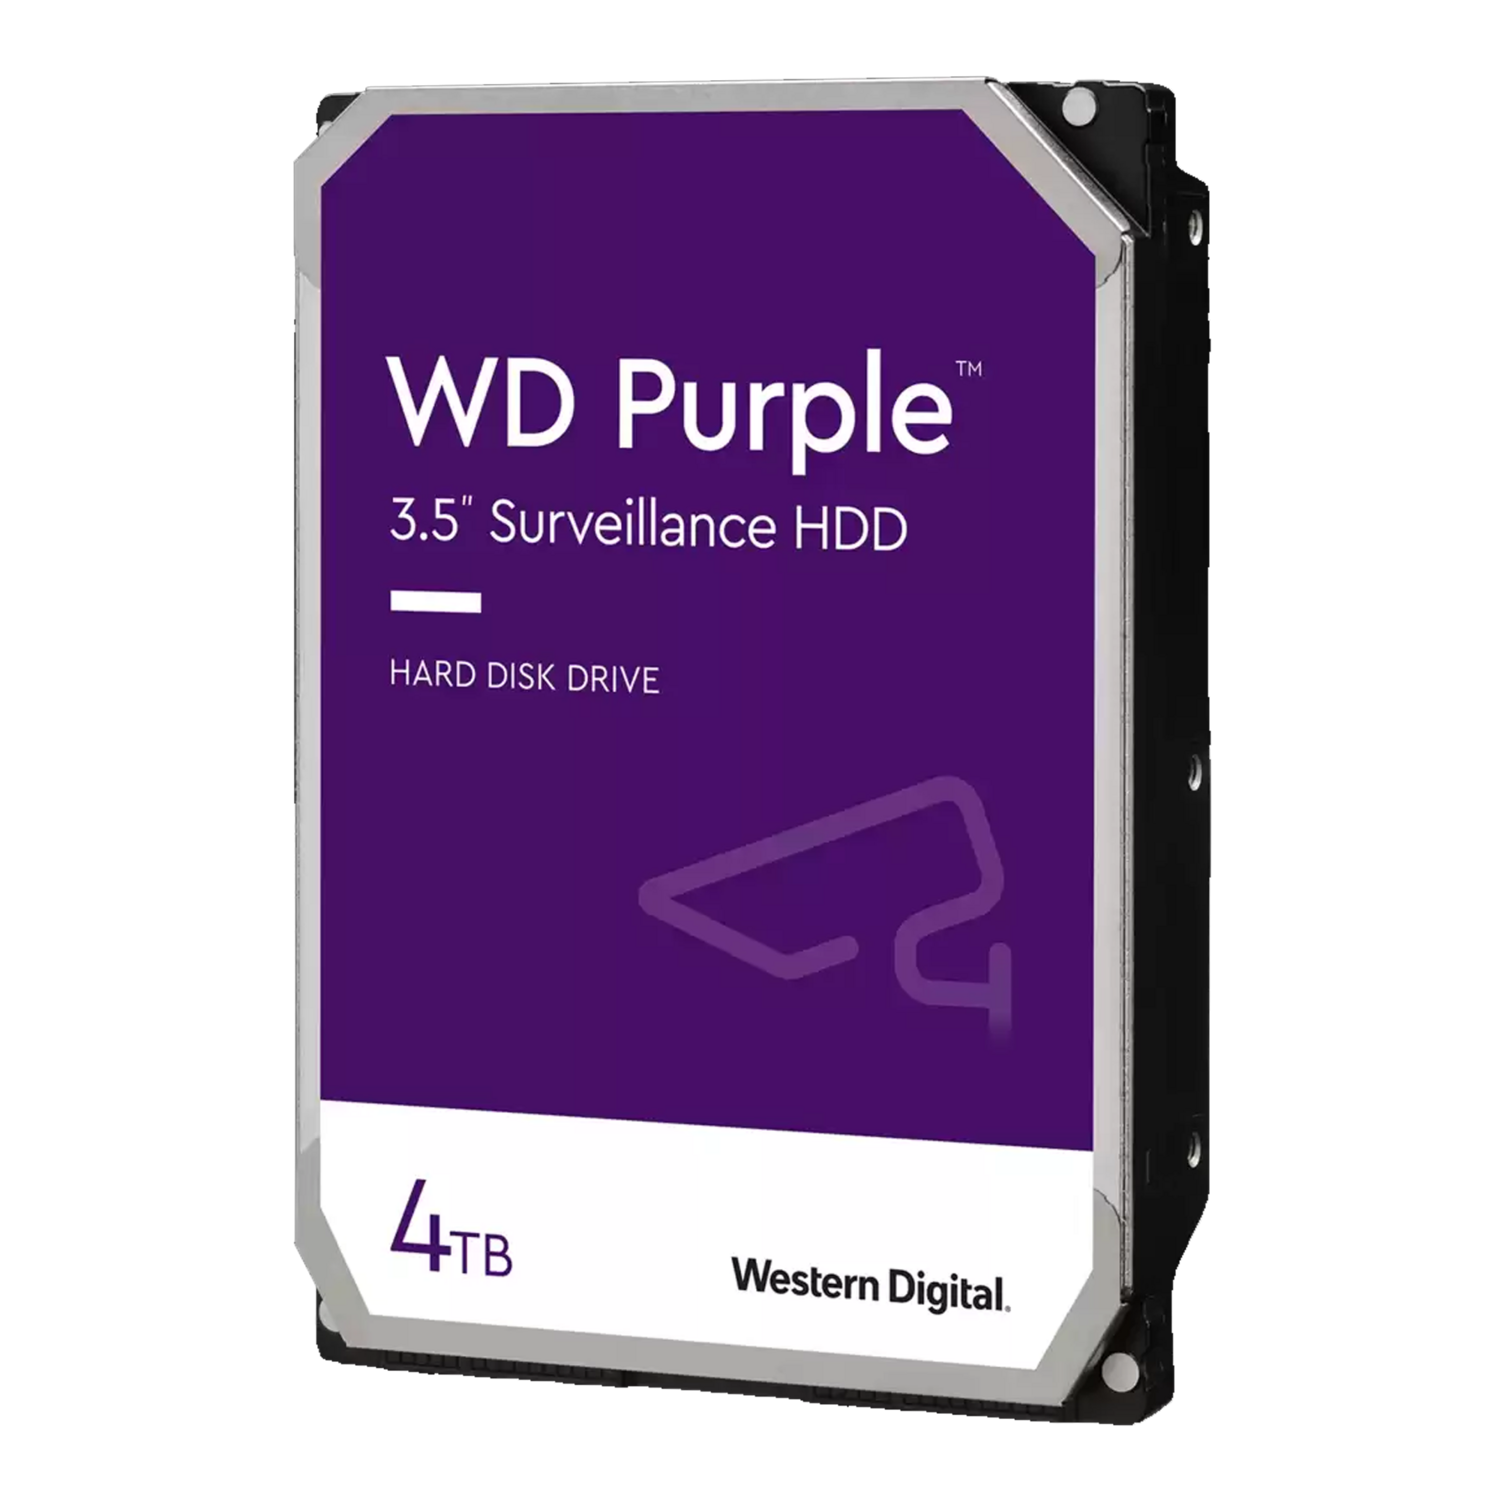 WD Purple Surveillance 4TB Hard Drive